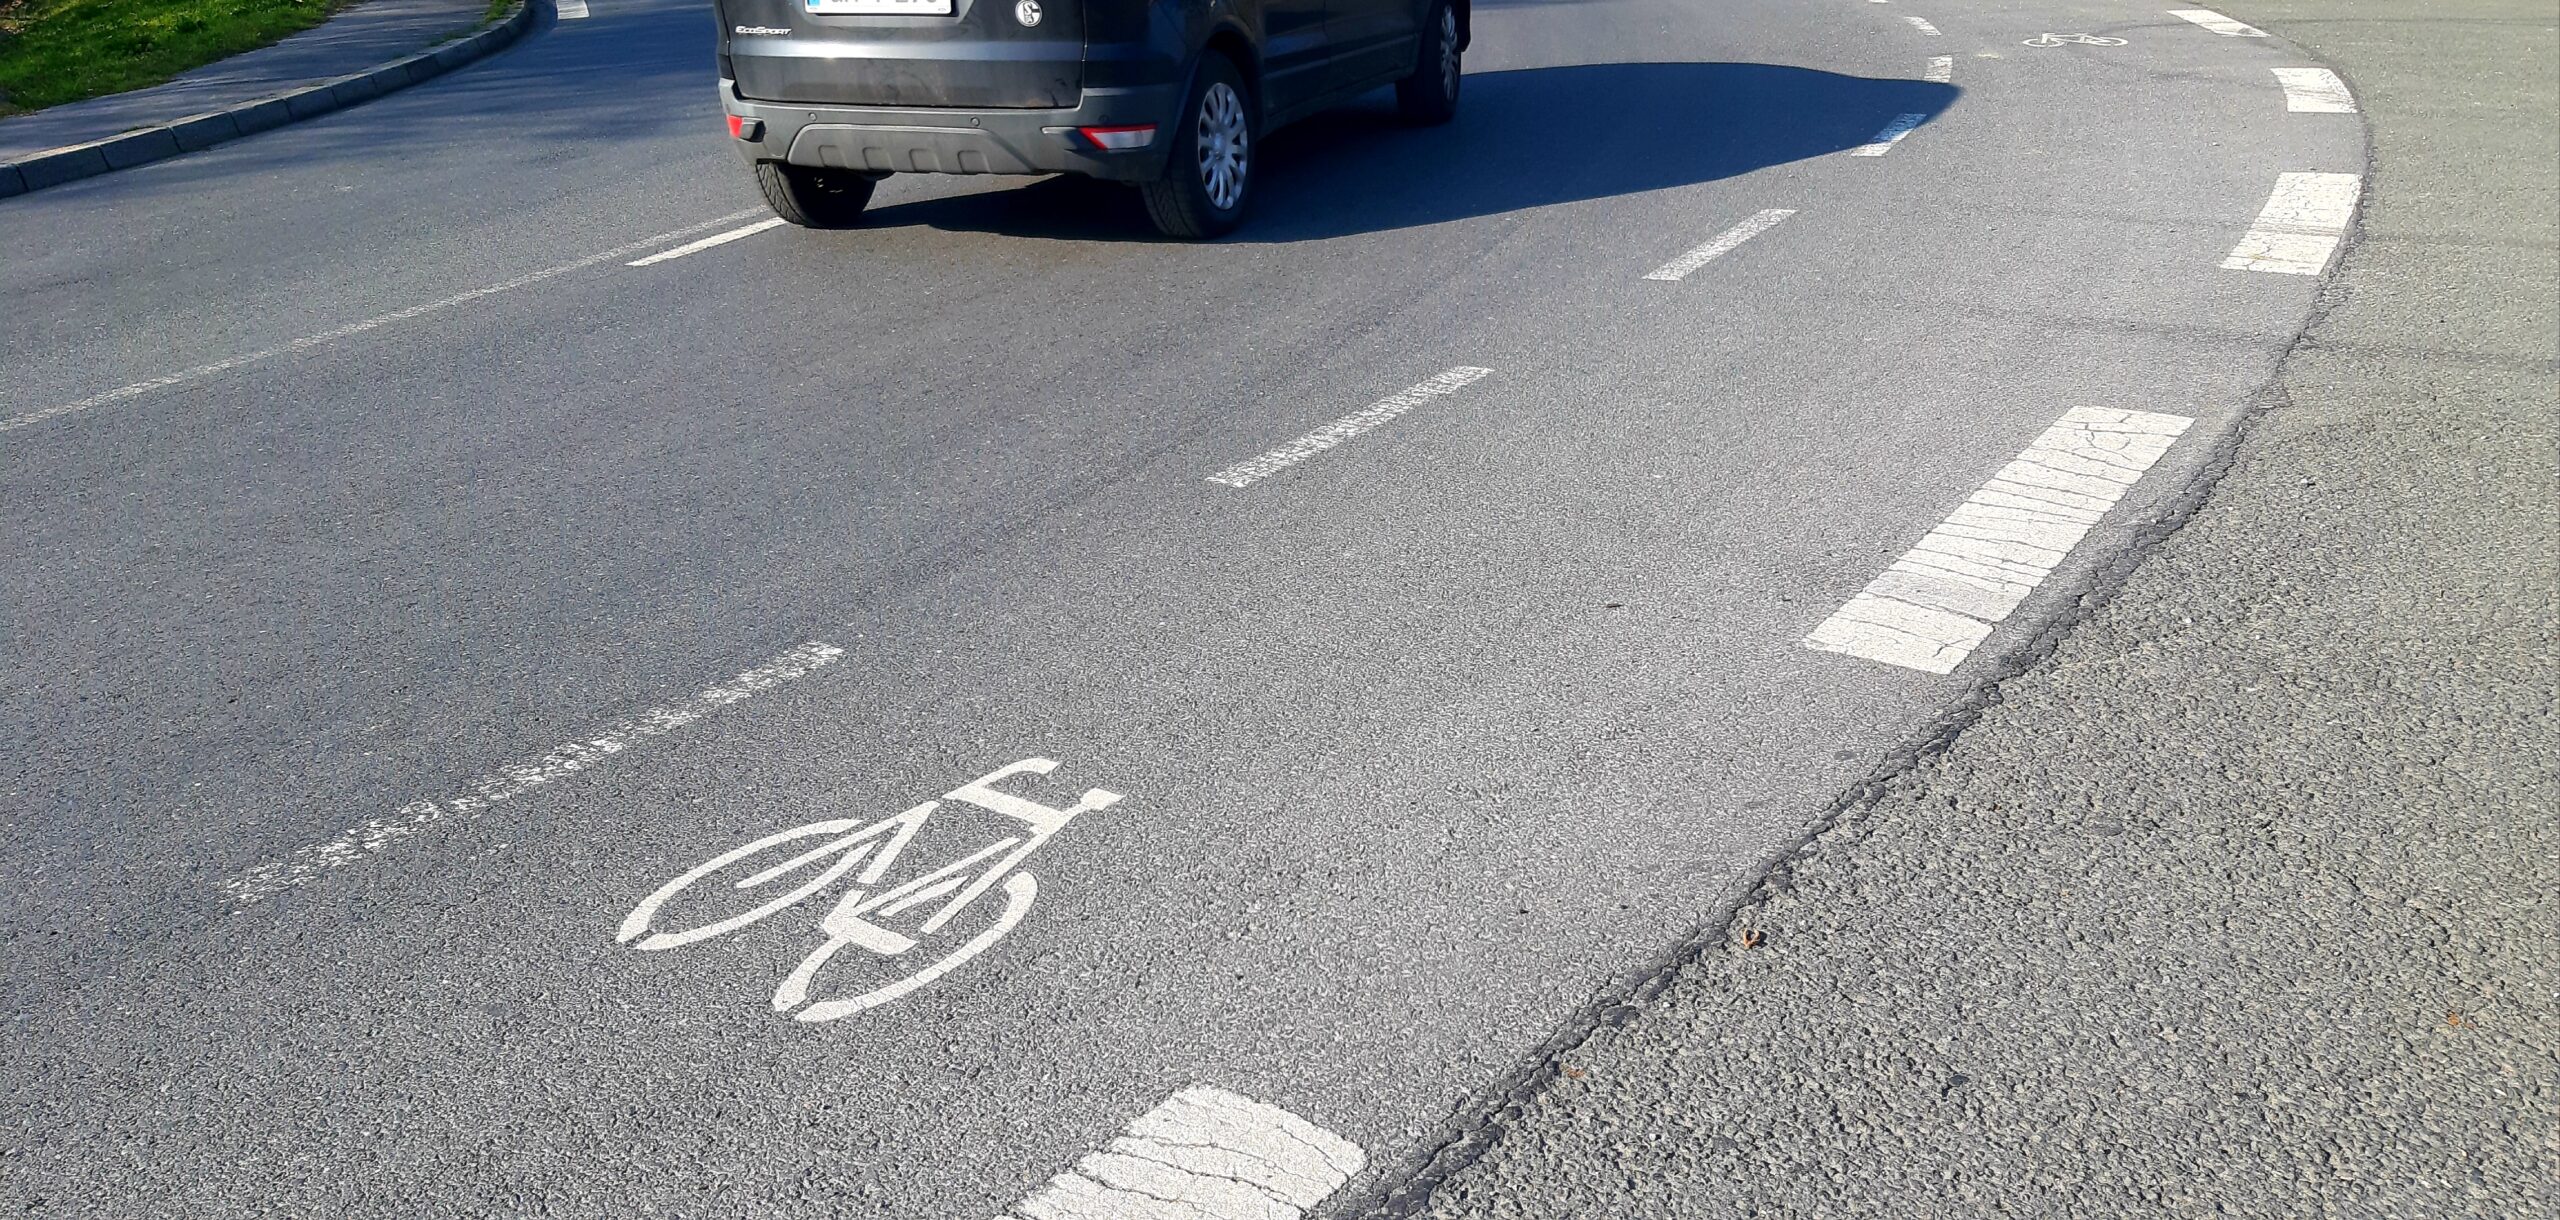 Parkplatzrasur zugunsten Radlern am Landweg in Howi: Kreis verweist aufs Radverkehrskonzept – Gemeinde „keine Einwände“